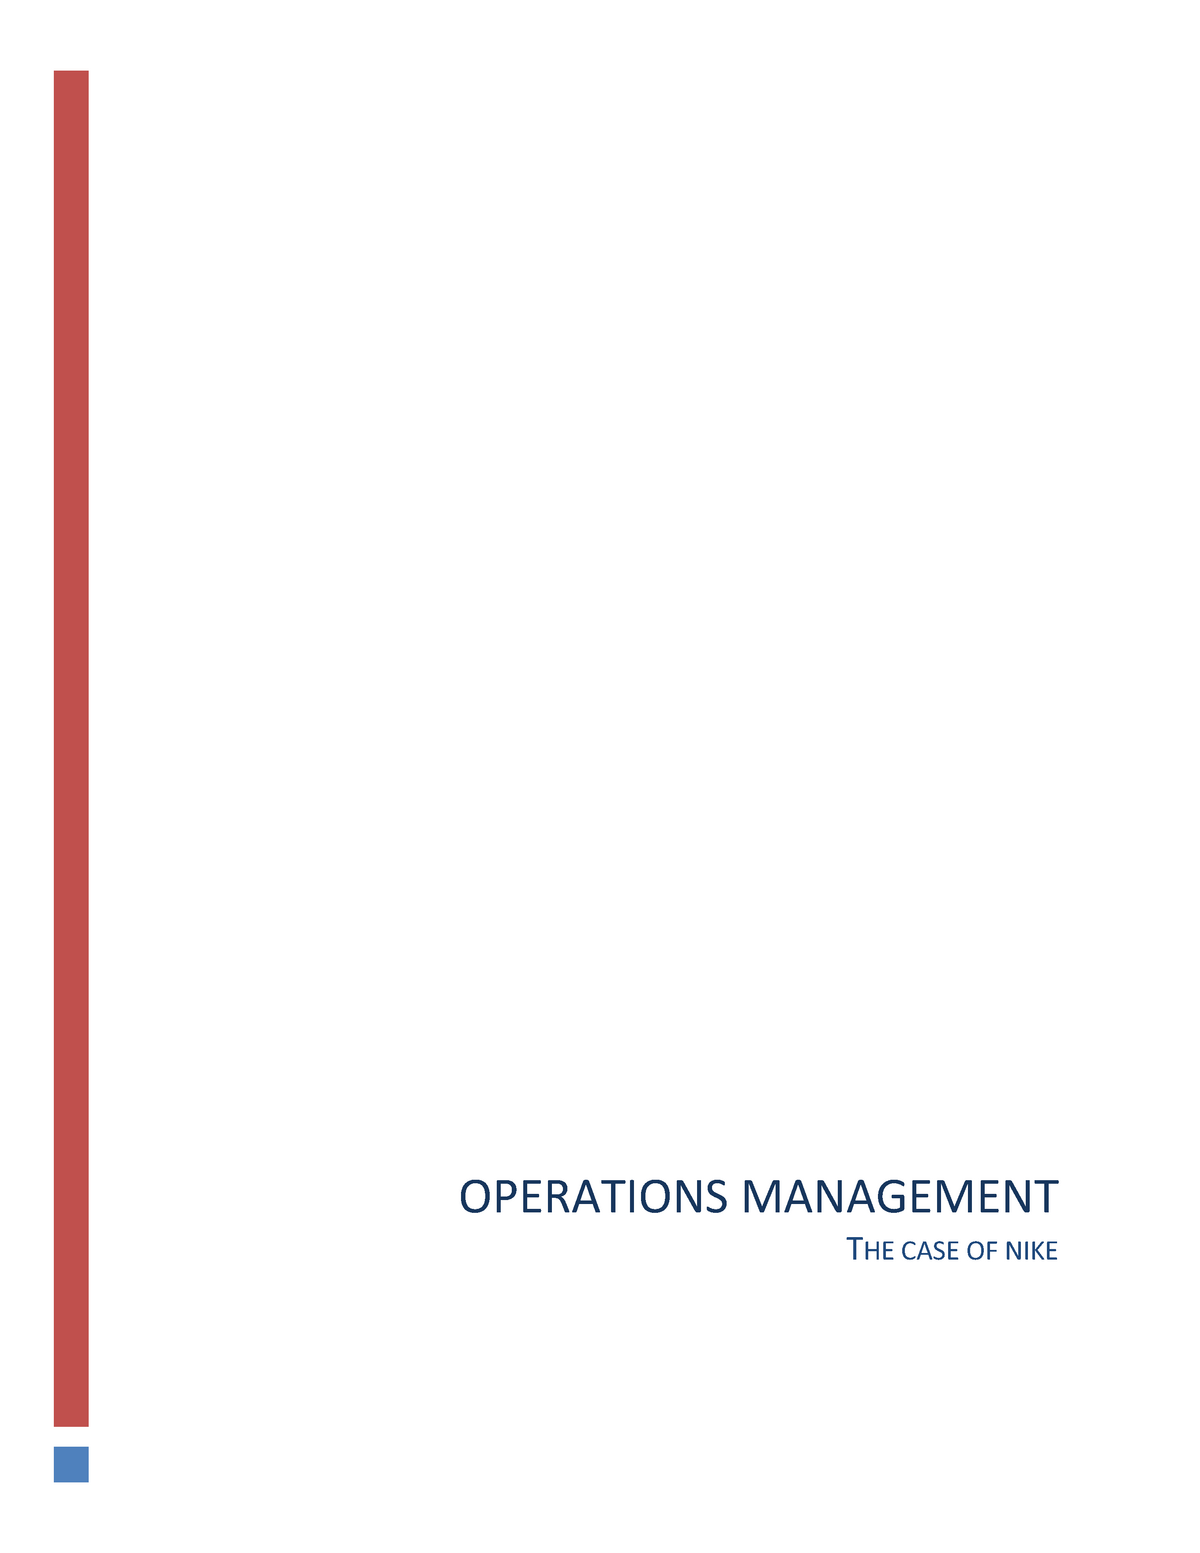 nike operation management